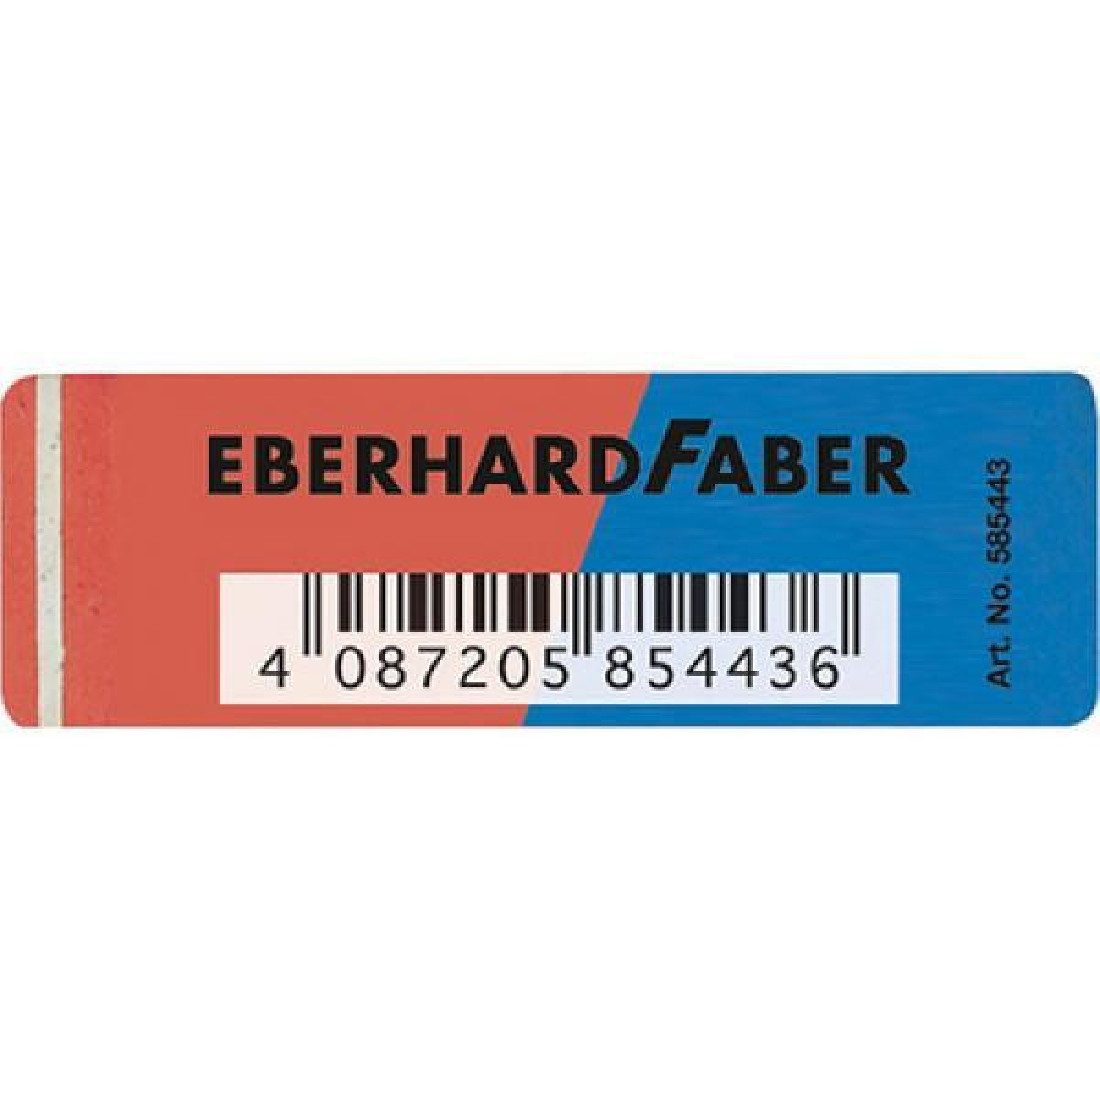 Γόμα Ν585443 Μπλέ-Κόκκινο Eberhard-Faber